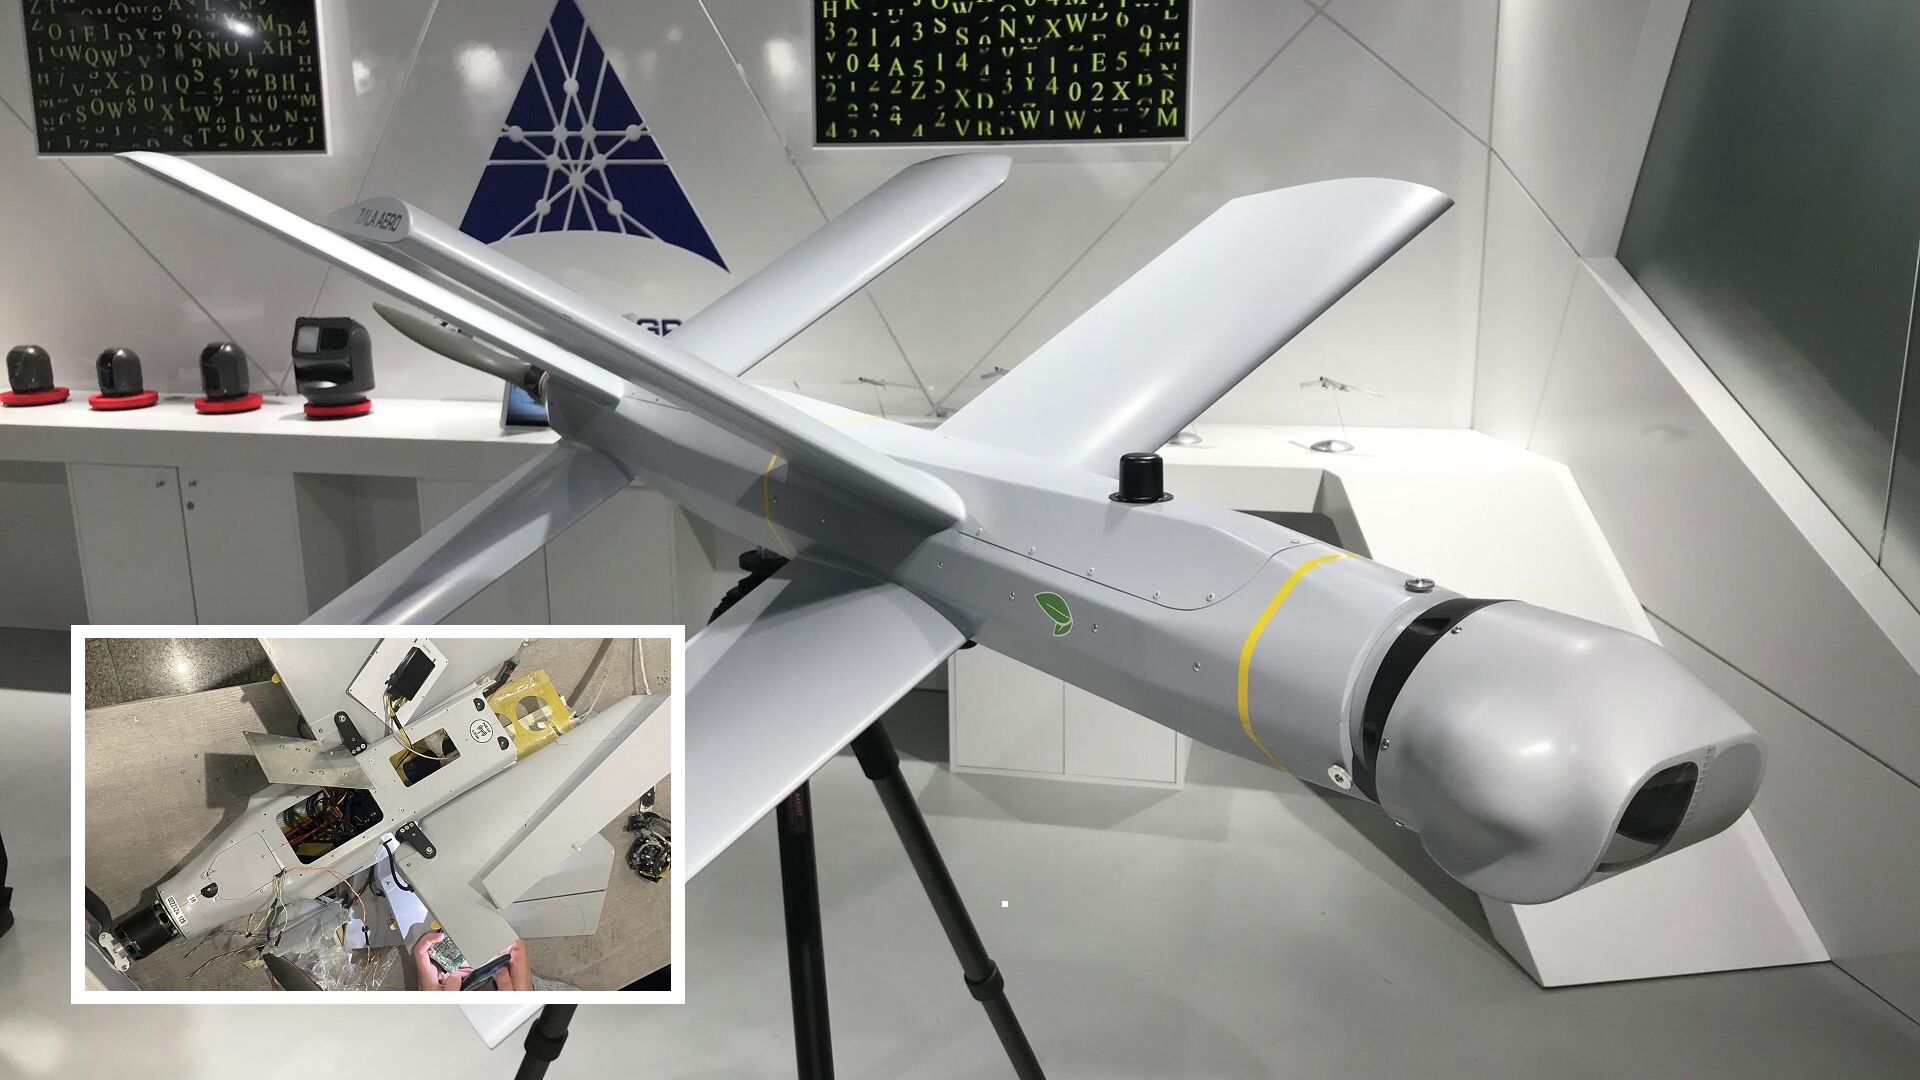 Il drone kamikaze Lancet della Russia è dotato di un computer NVIDIA Jetson TX2 e di un chip Xilinx Zynq